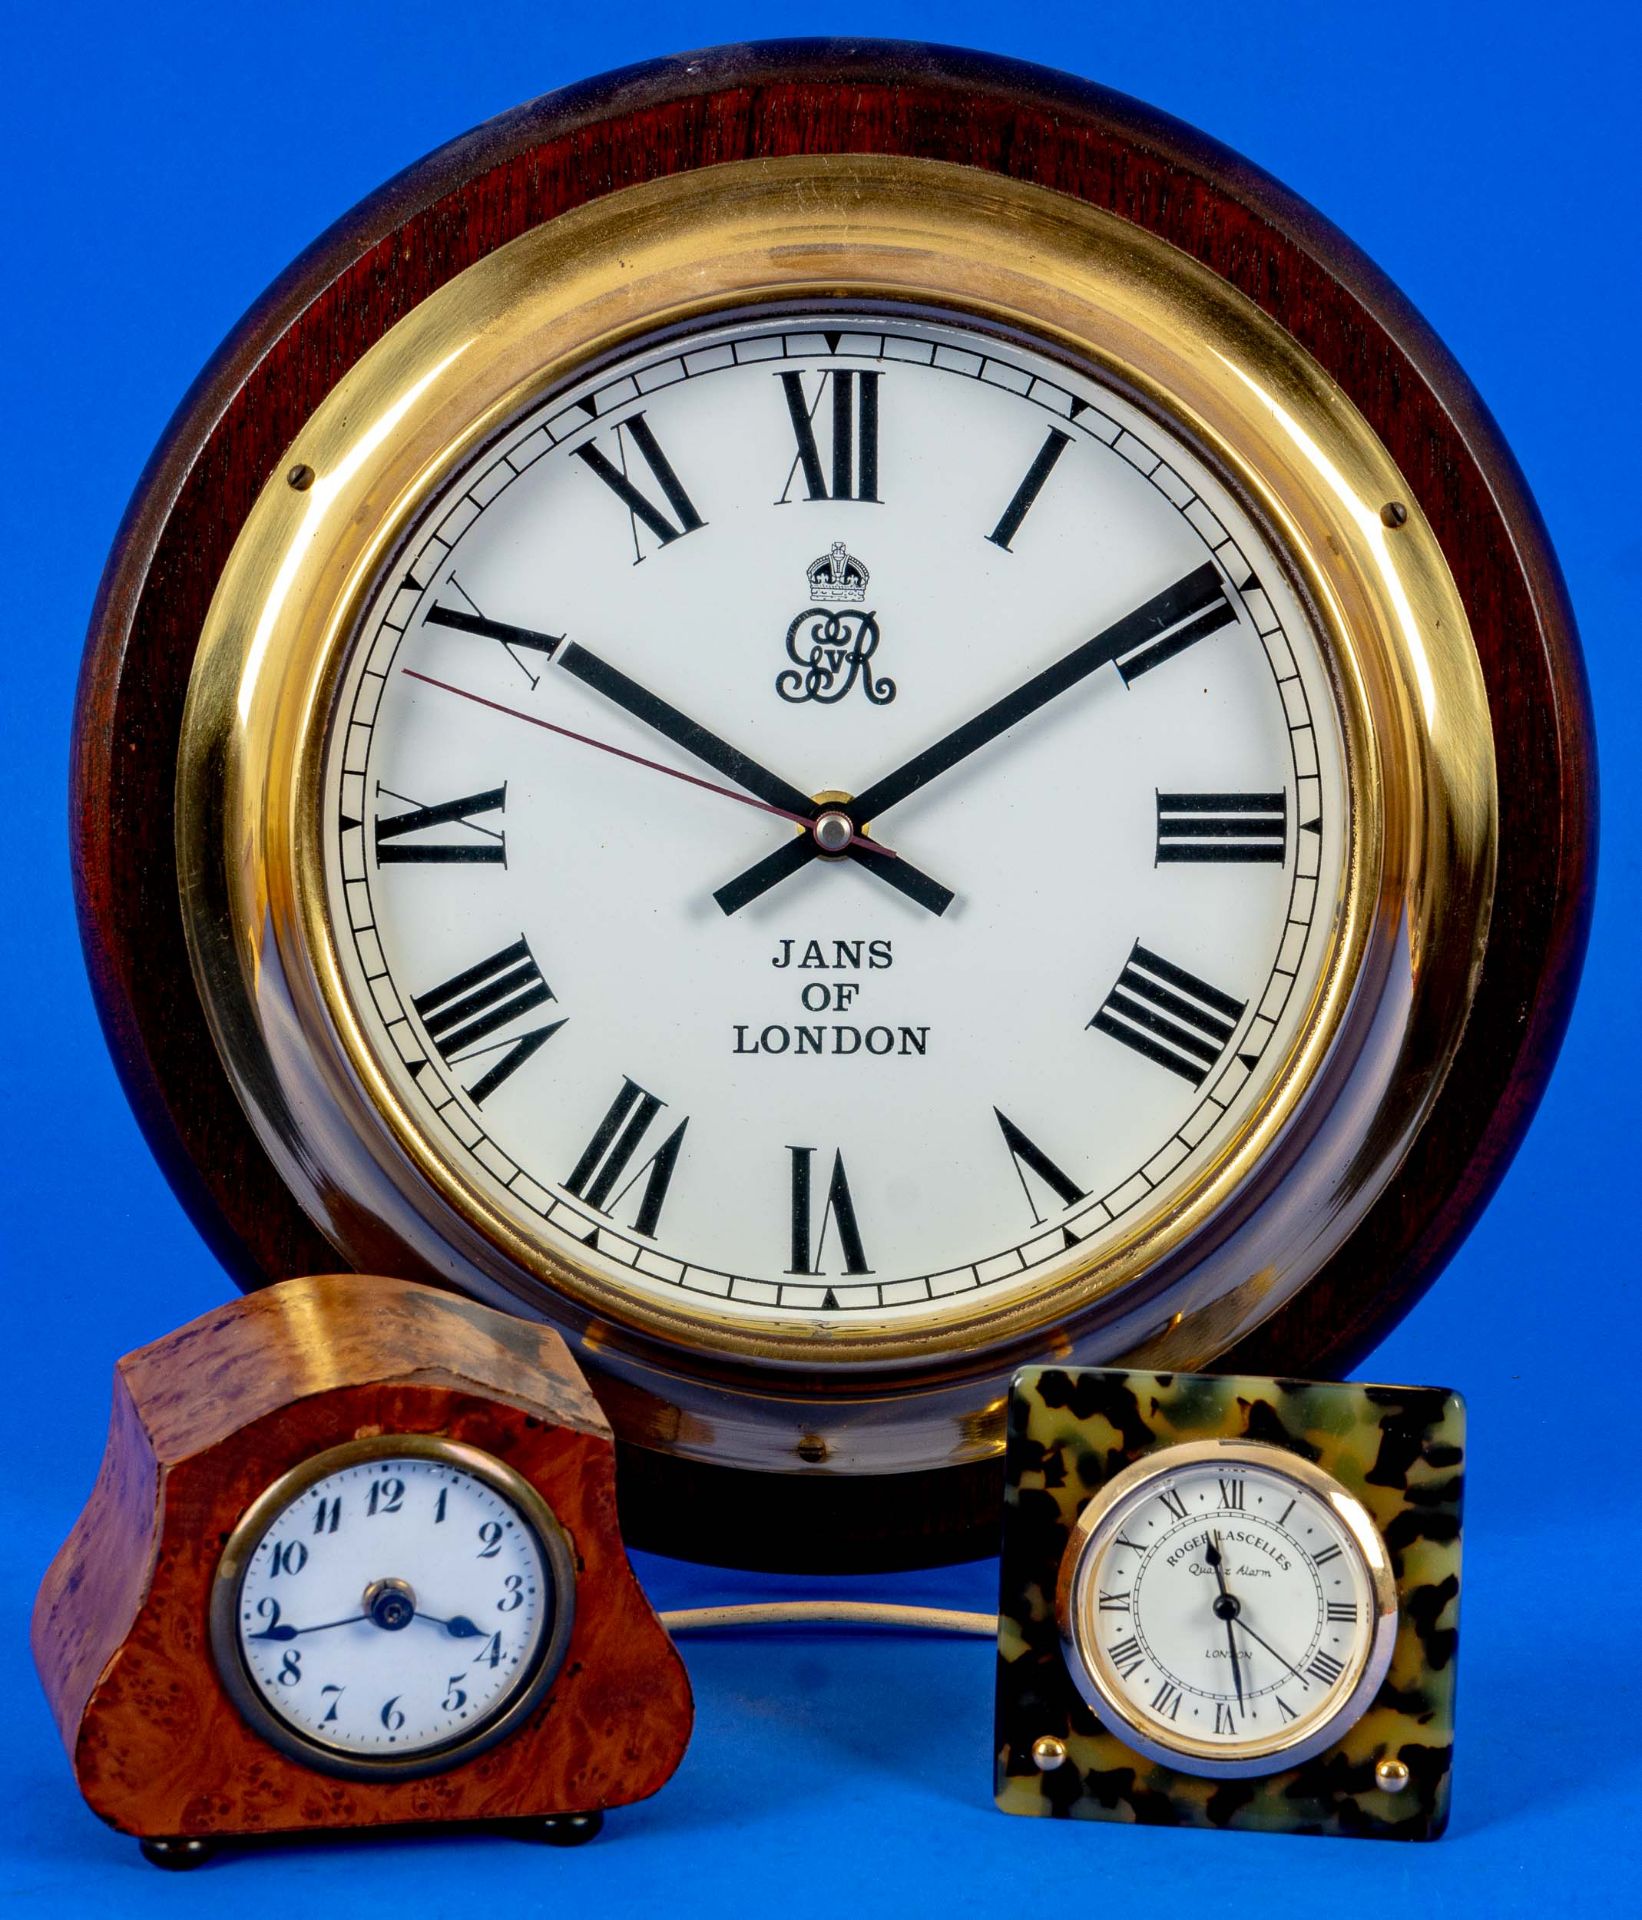 3teiliges Konvolut versch. Uhren, bestehend aus 2 versch. Tischweckern und einer Wanduhr, alle mit